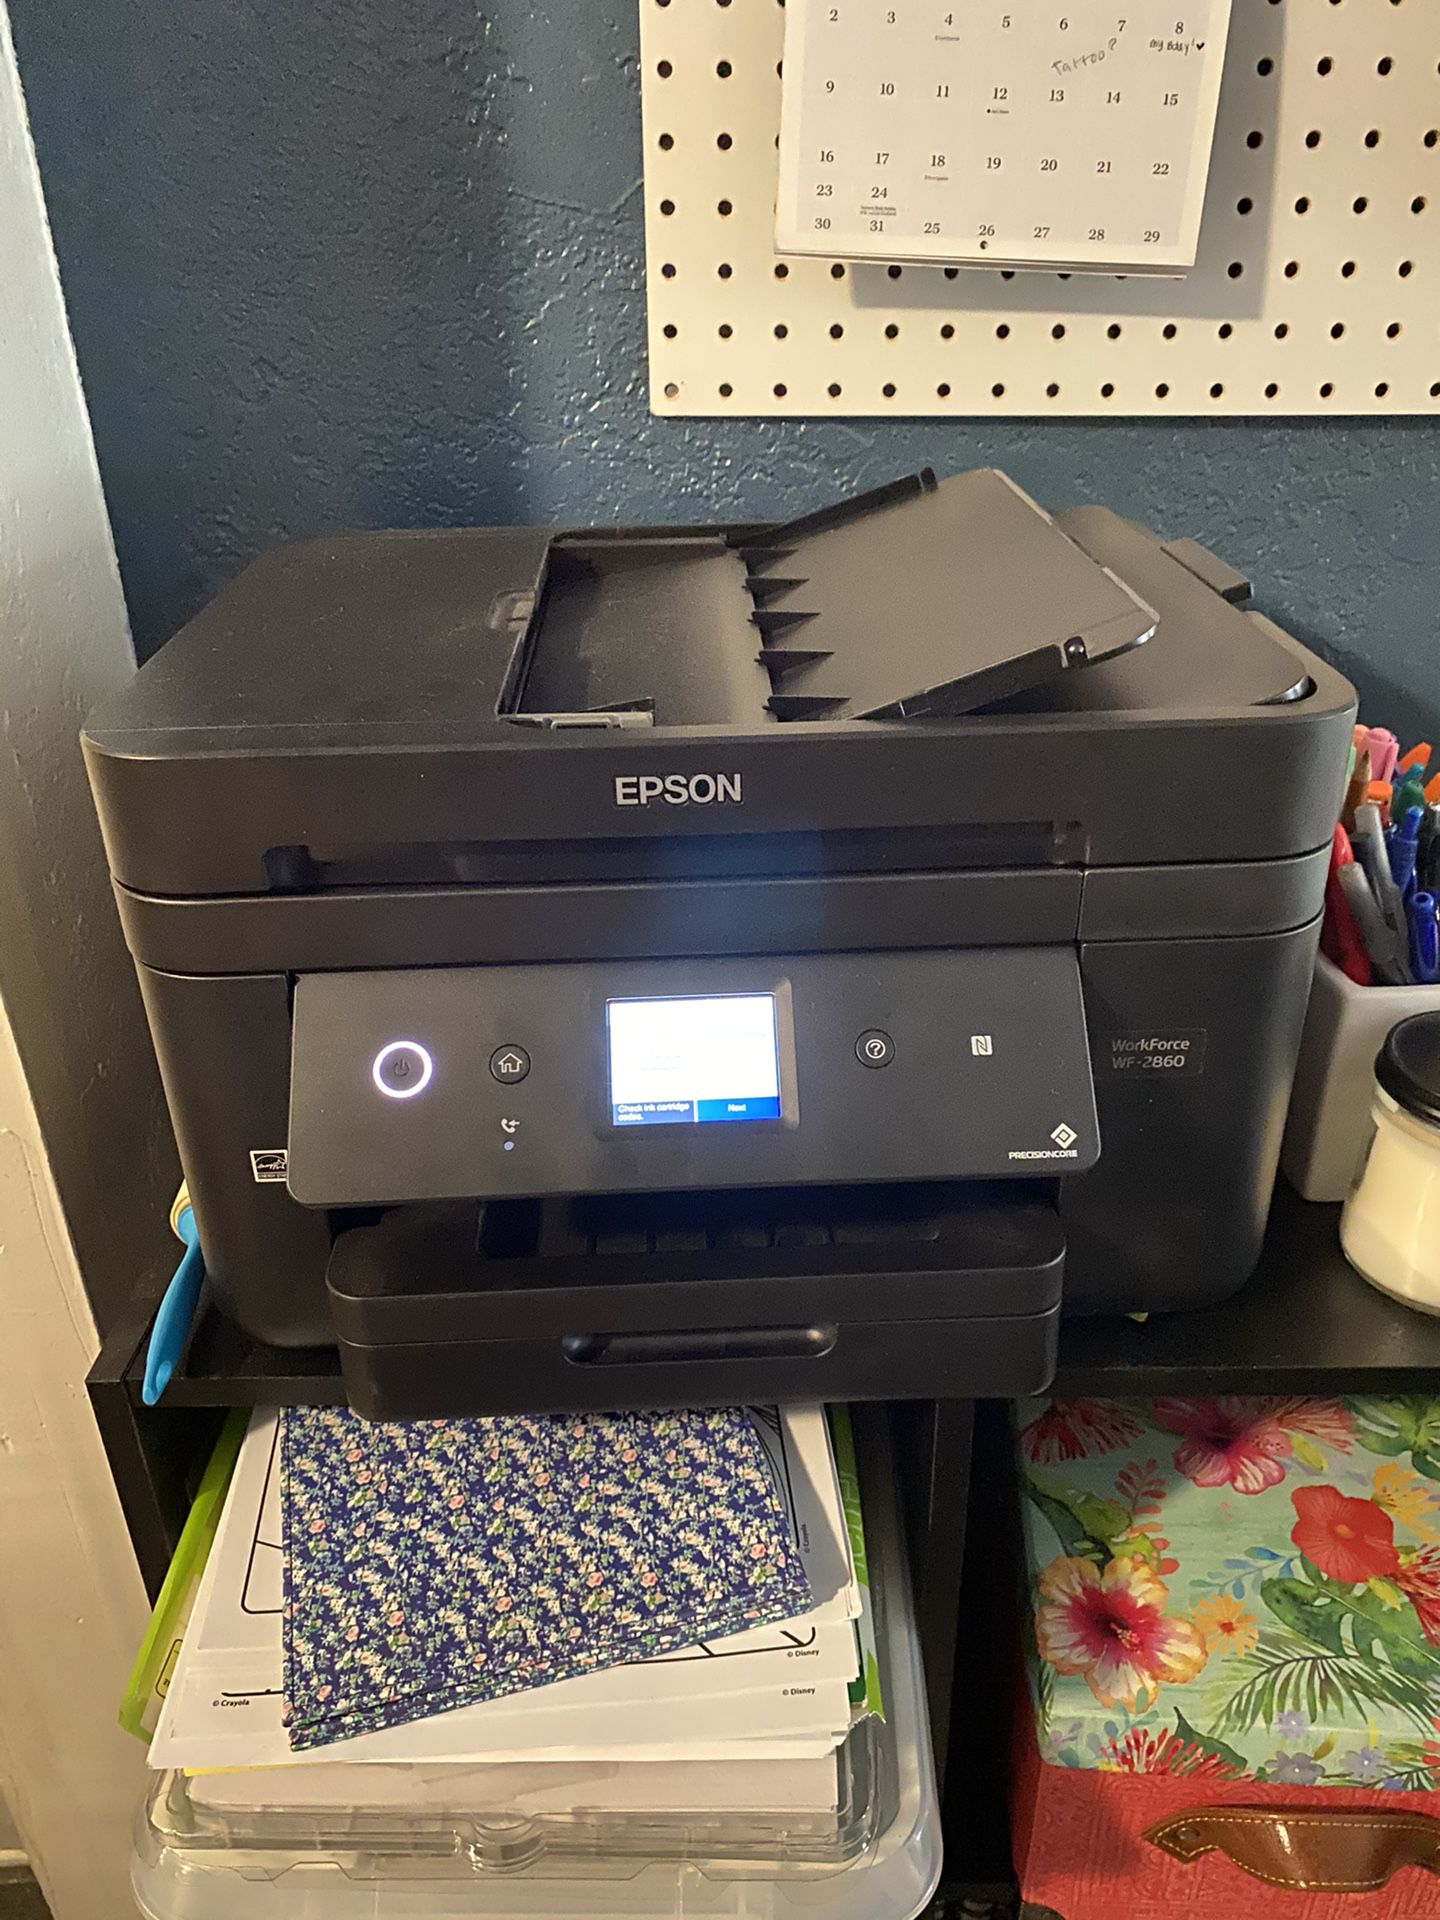 Epson printer/scanner